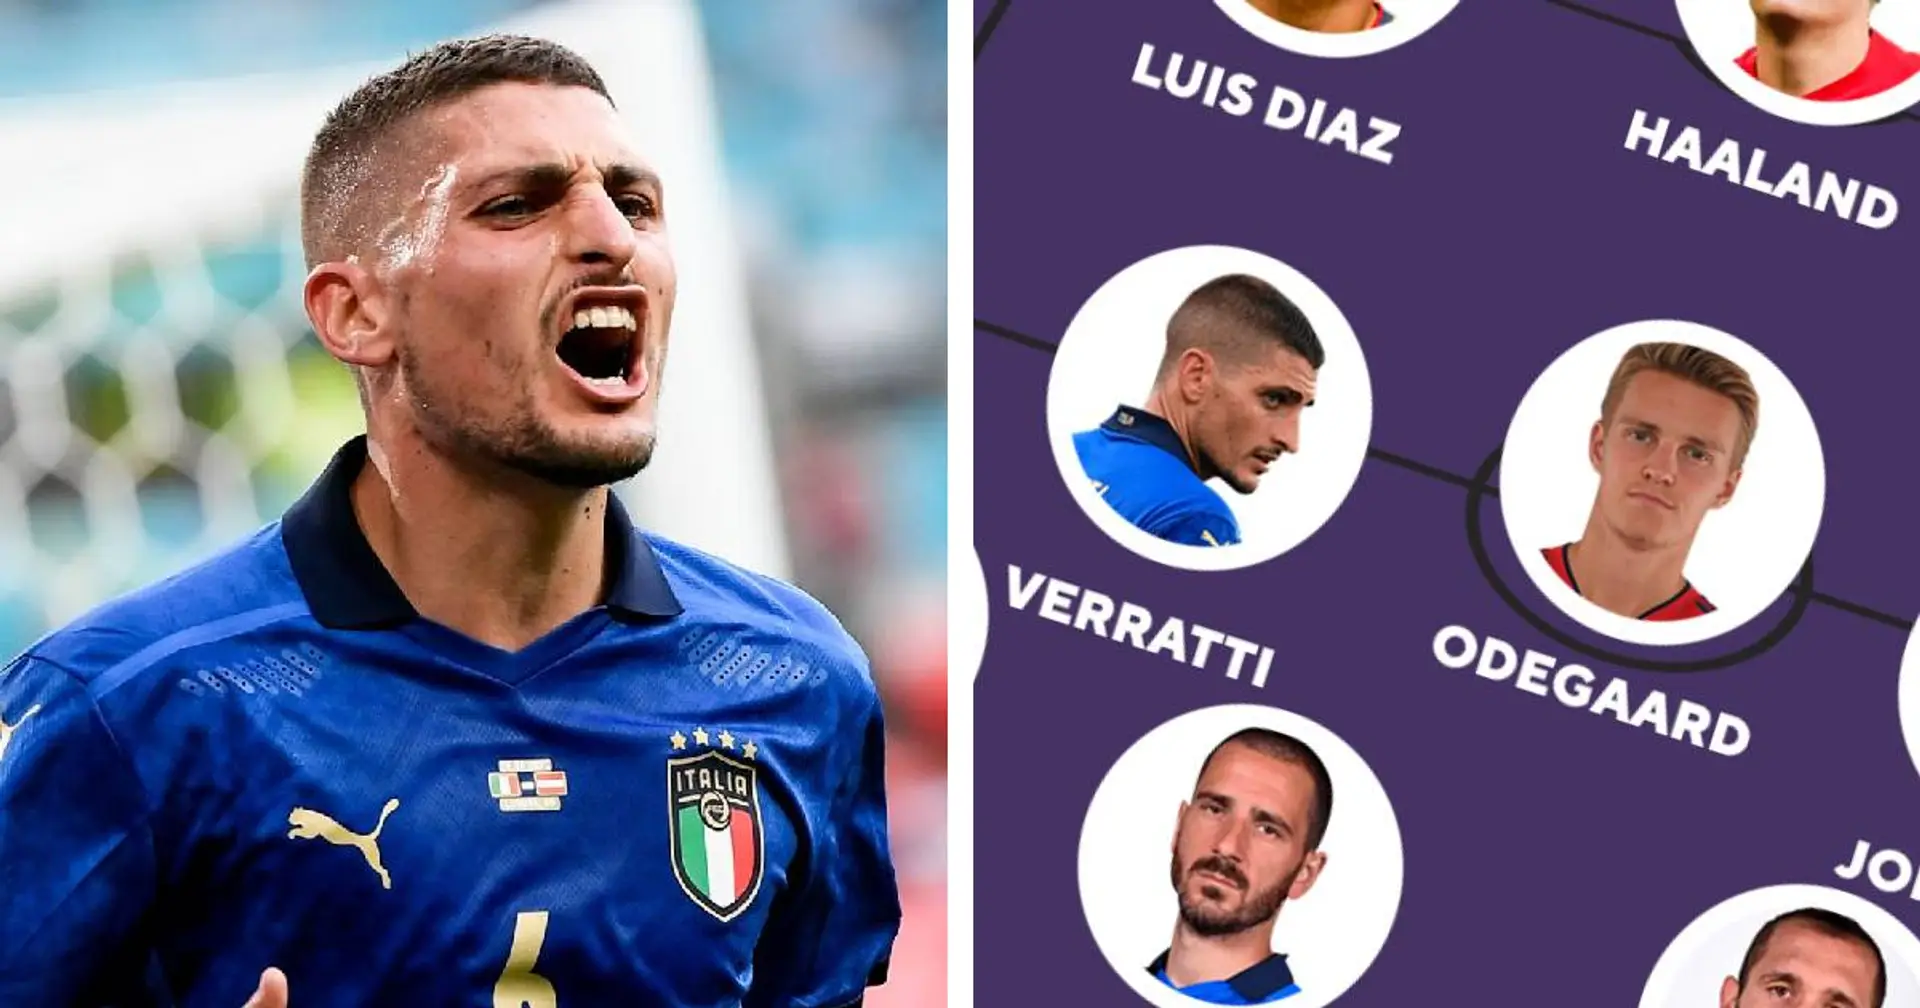 Le meilleur XI des stars qui manqueront la Coupe du monde Qatar 2022, y compris Verratti, Haaland et plus